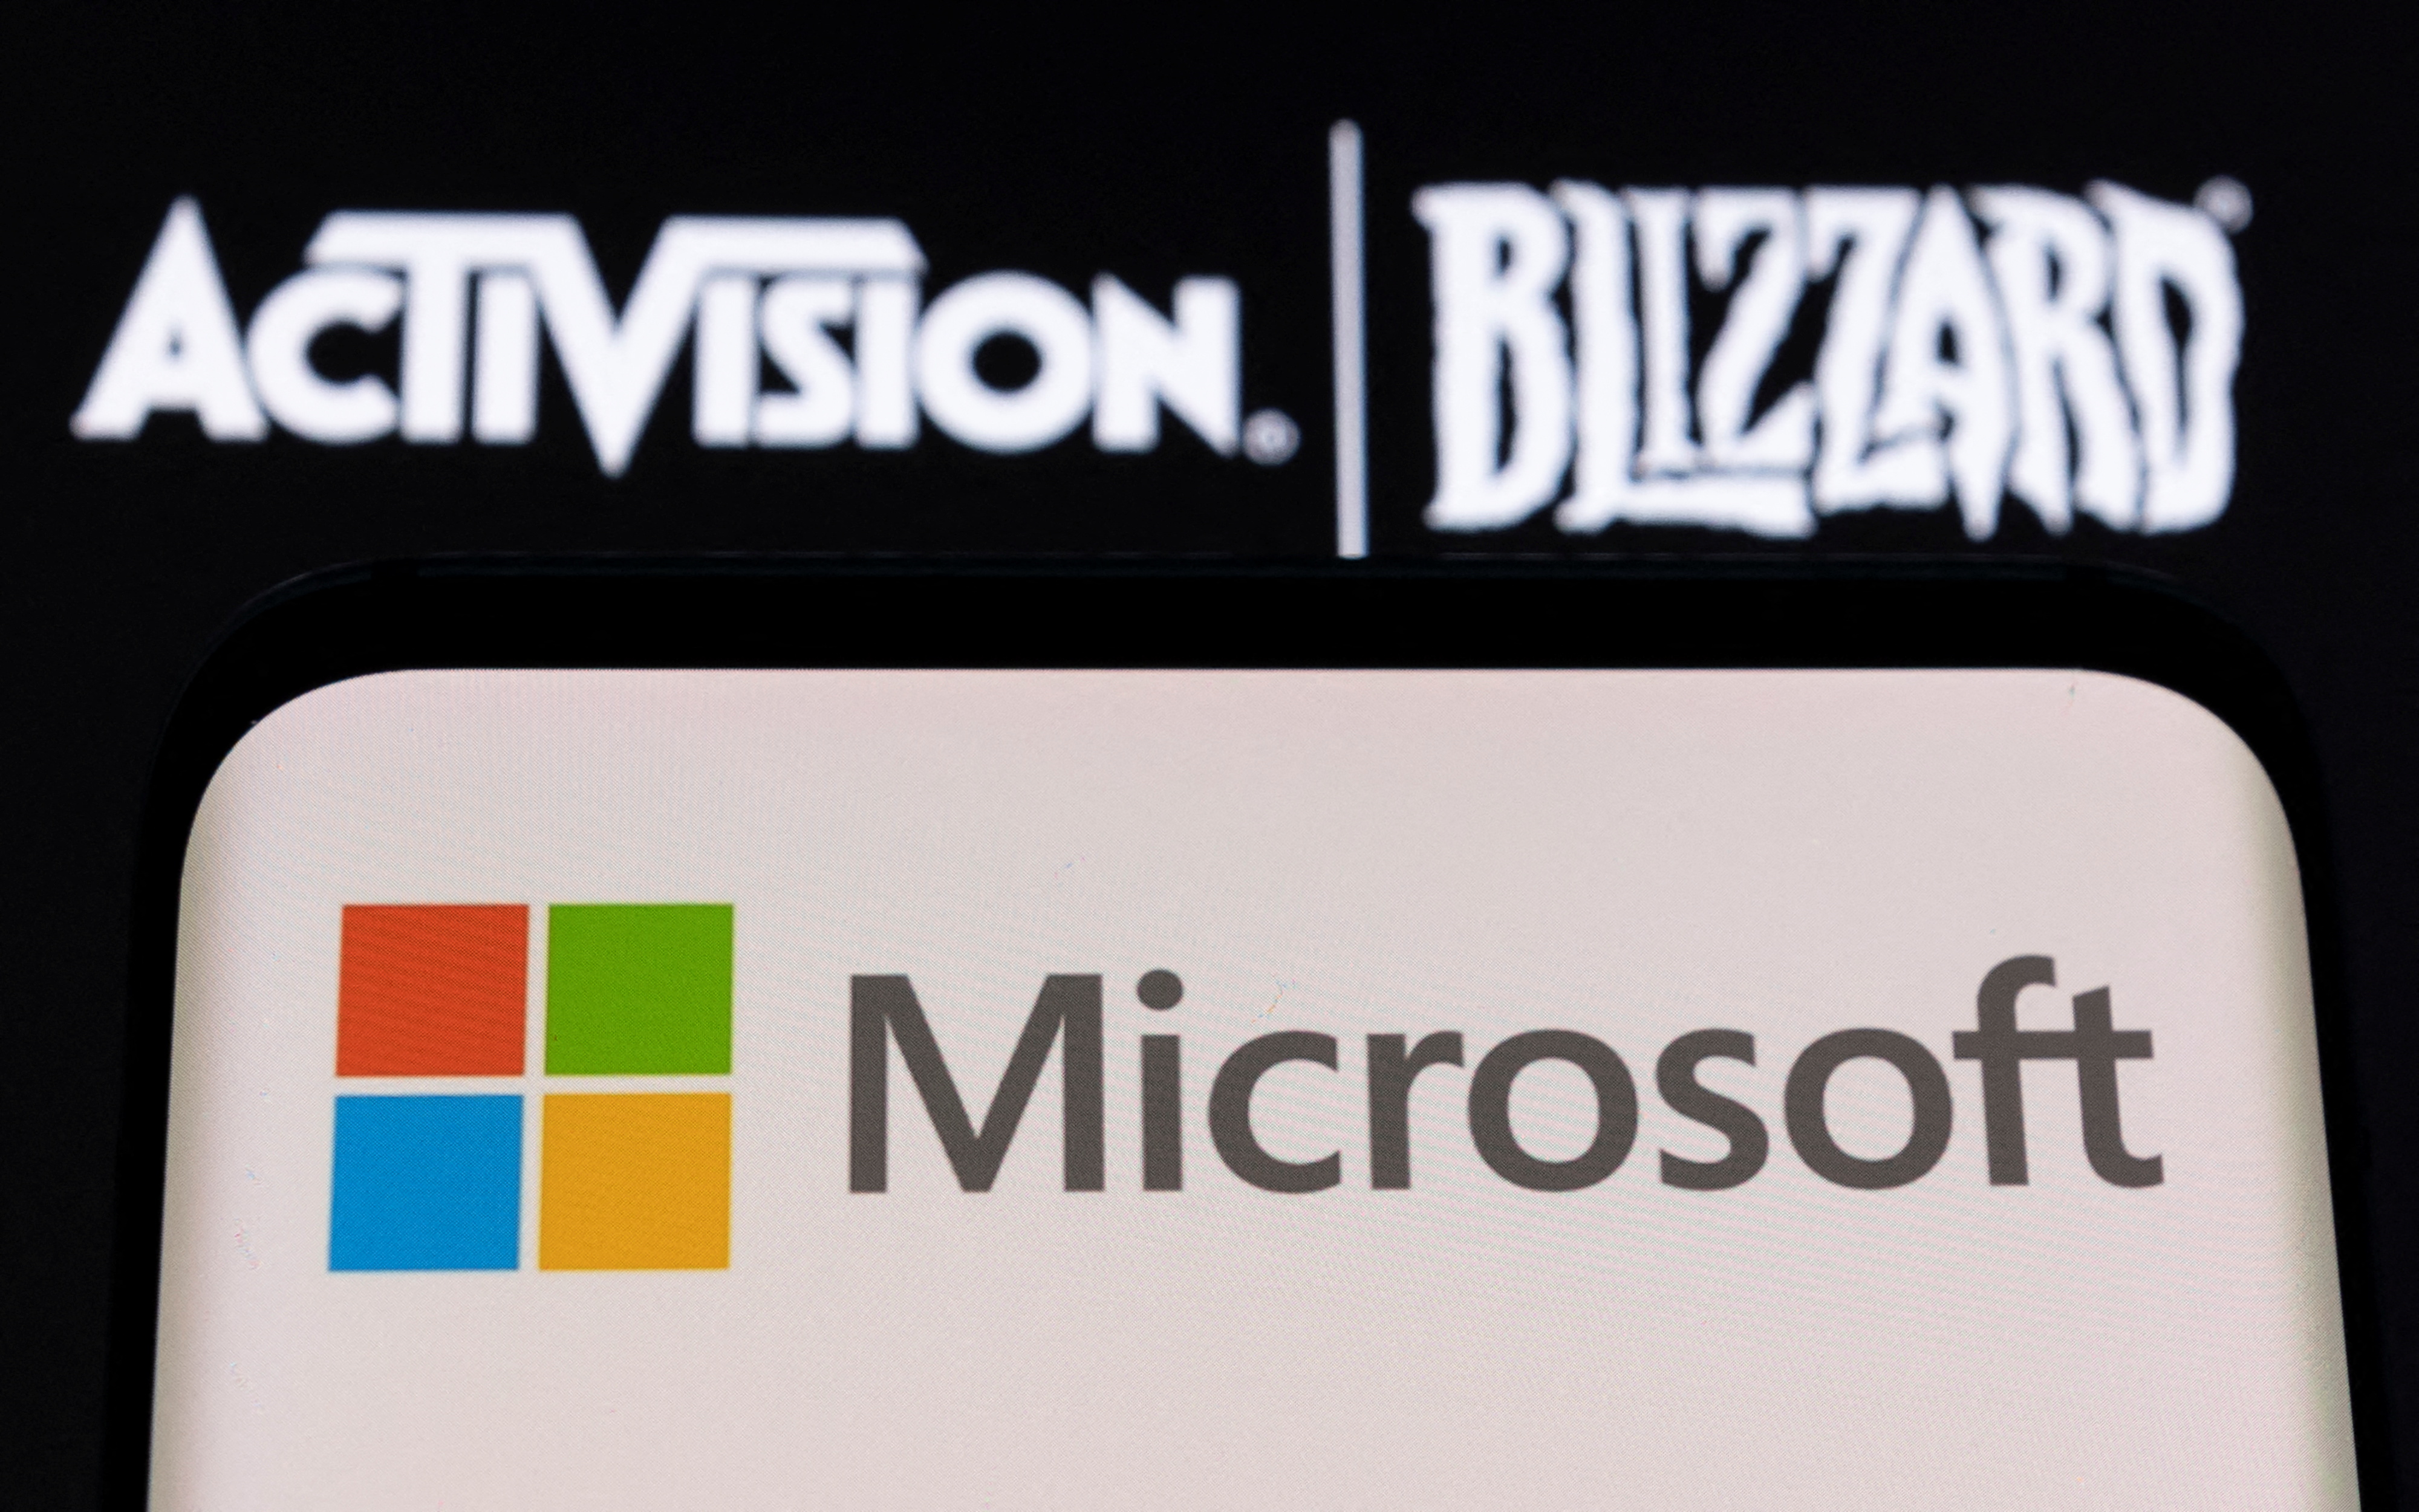 Ilustração dos logotipos da Microsoft e da Activision Blizzard